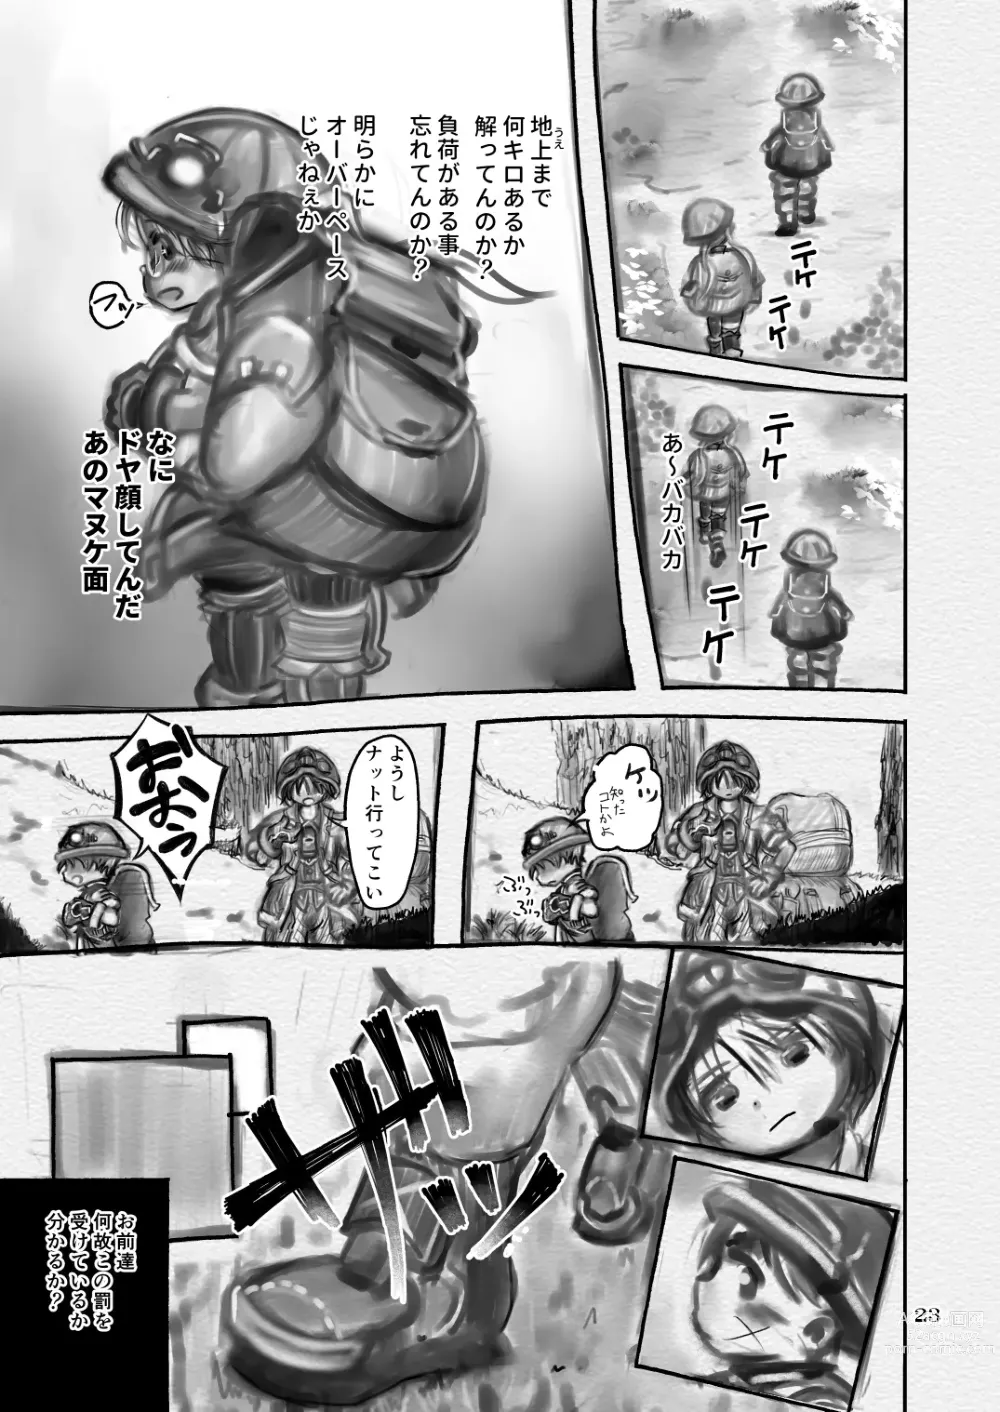 Page 23 of doujinshi Sakubun